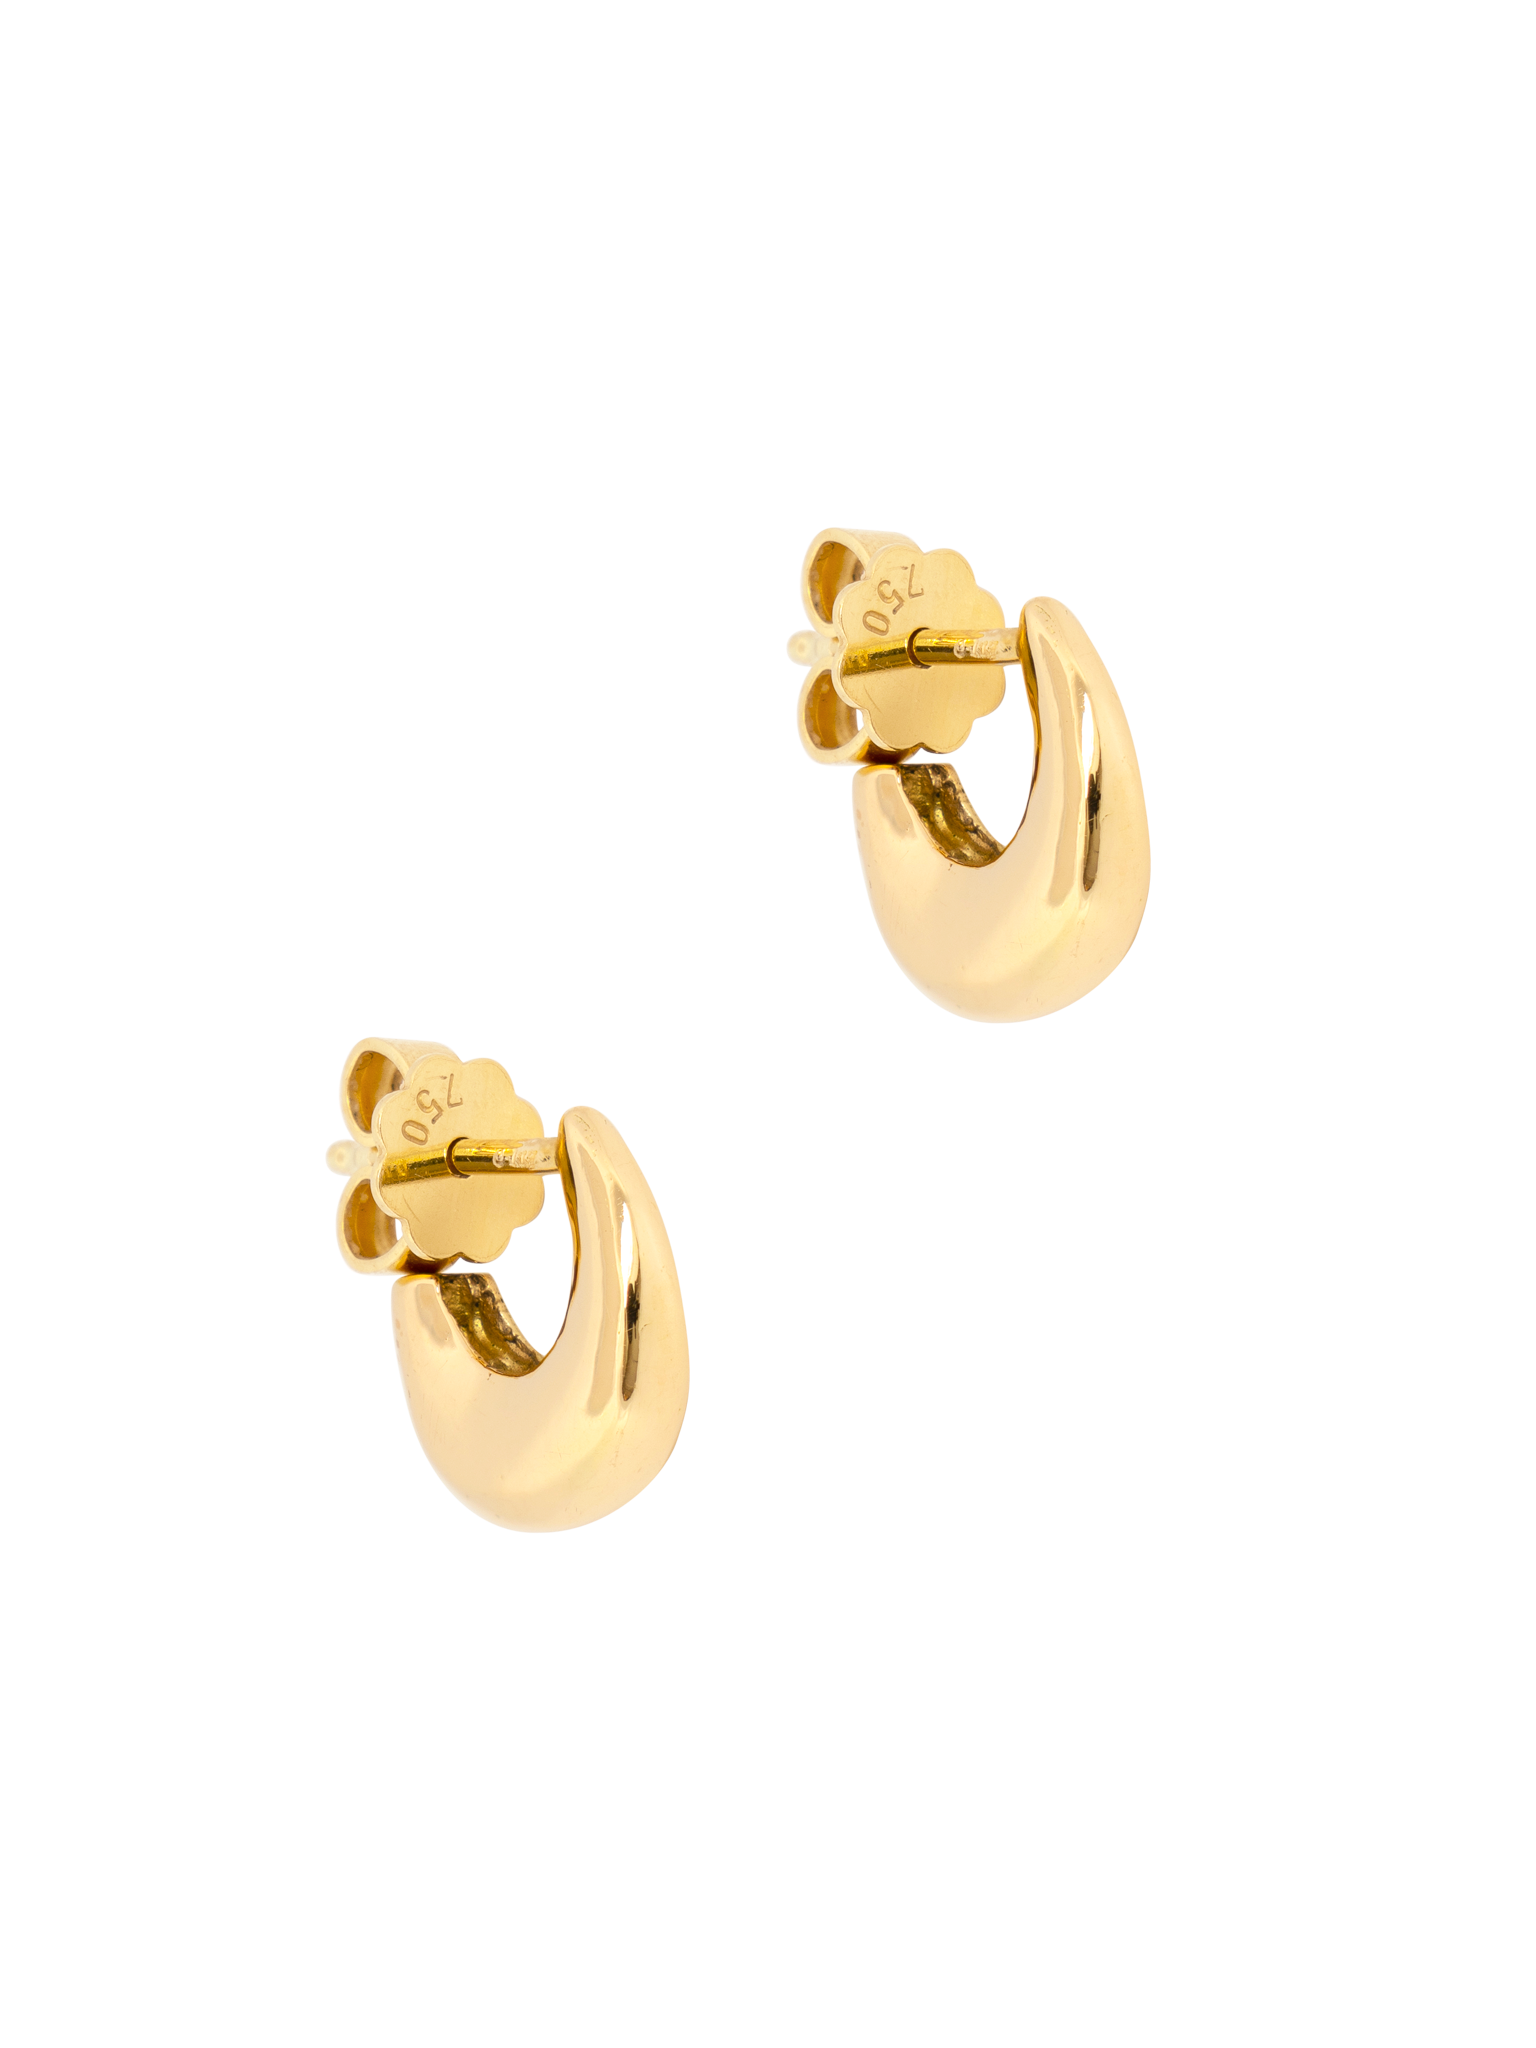 Charis earrings